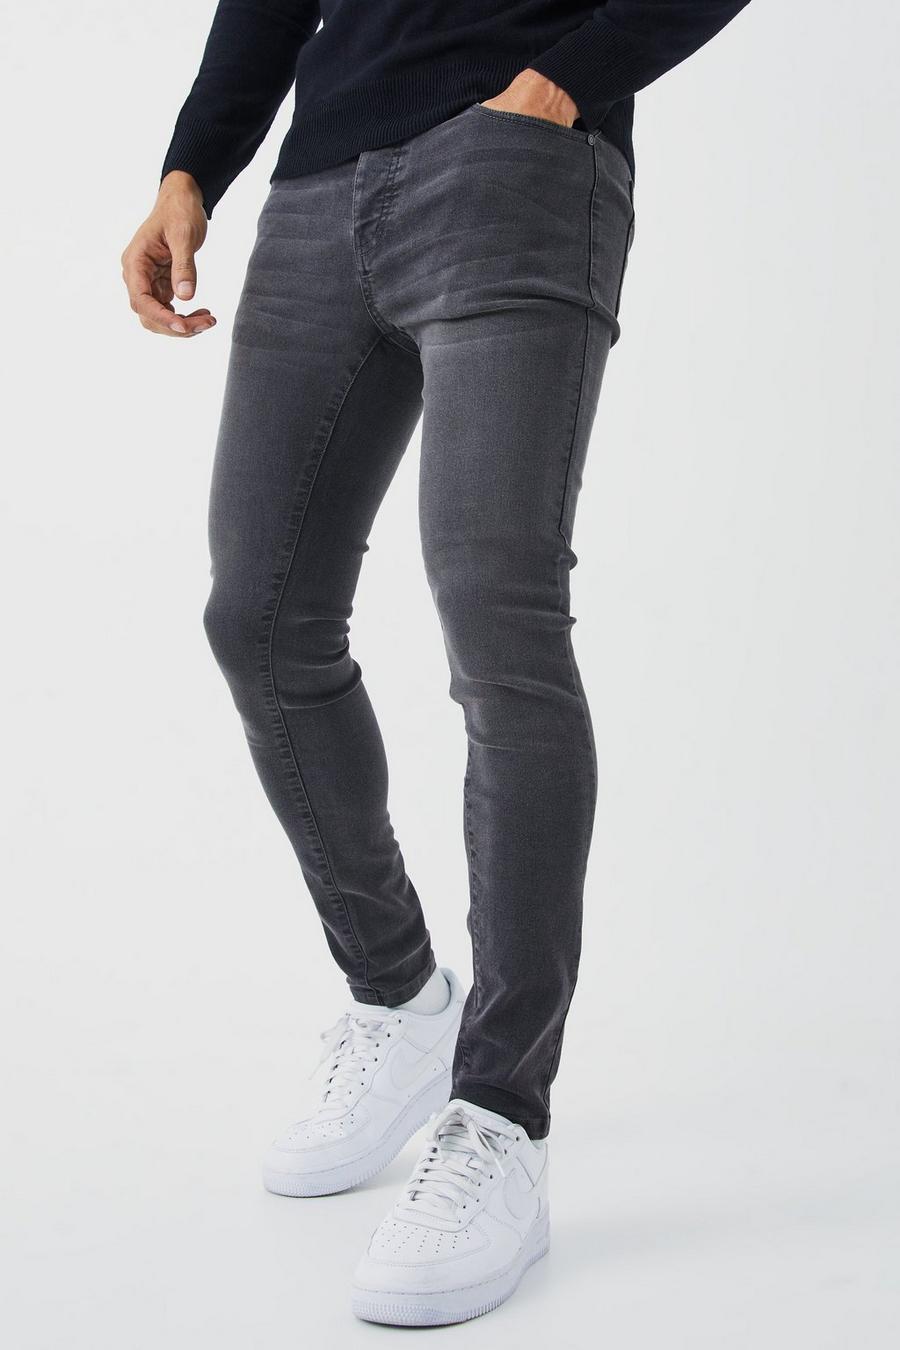 Charcoal grau Super Skinny Stretch Jean